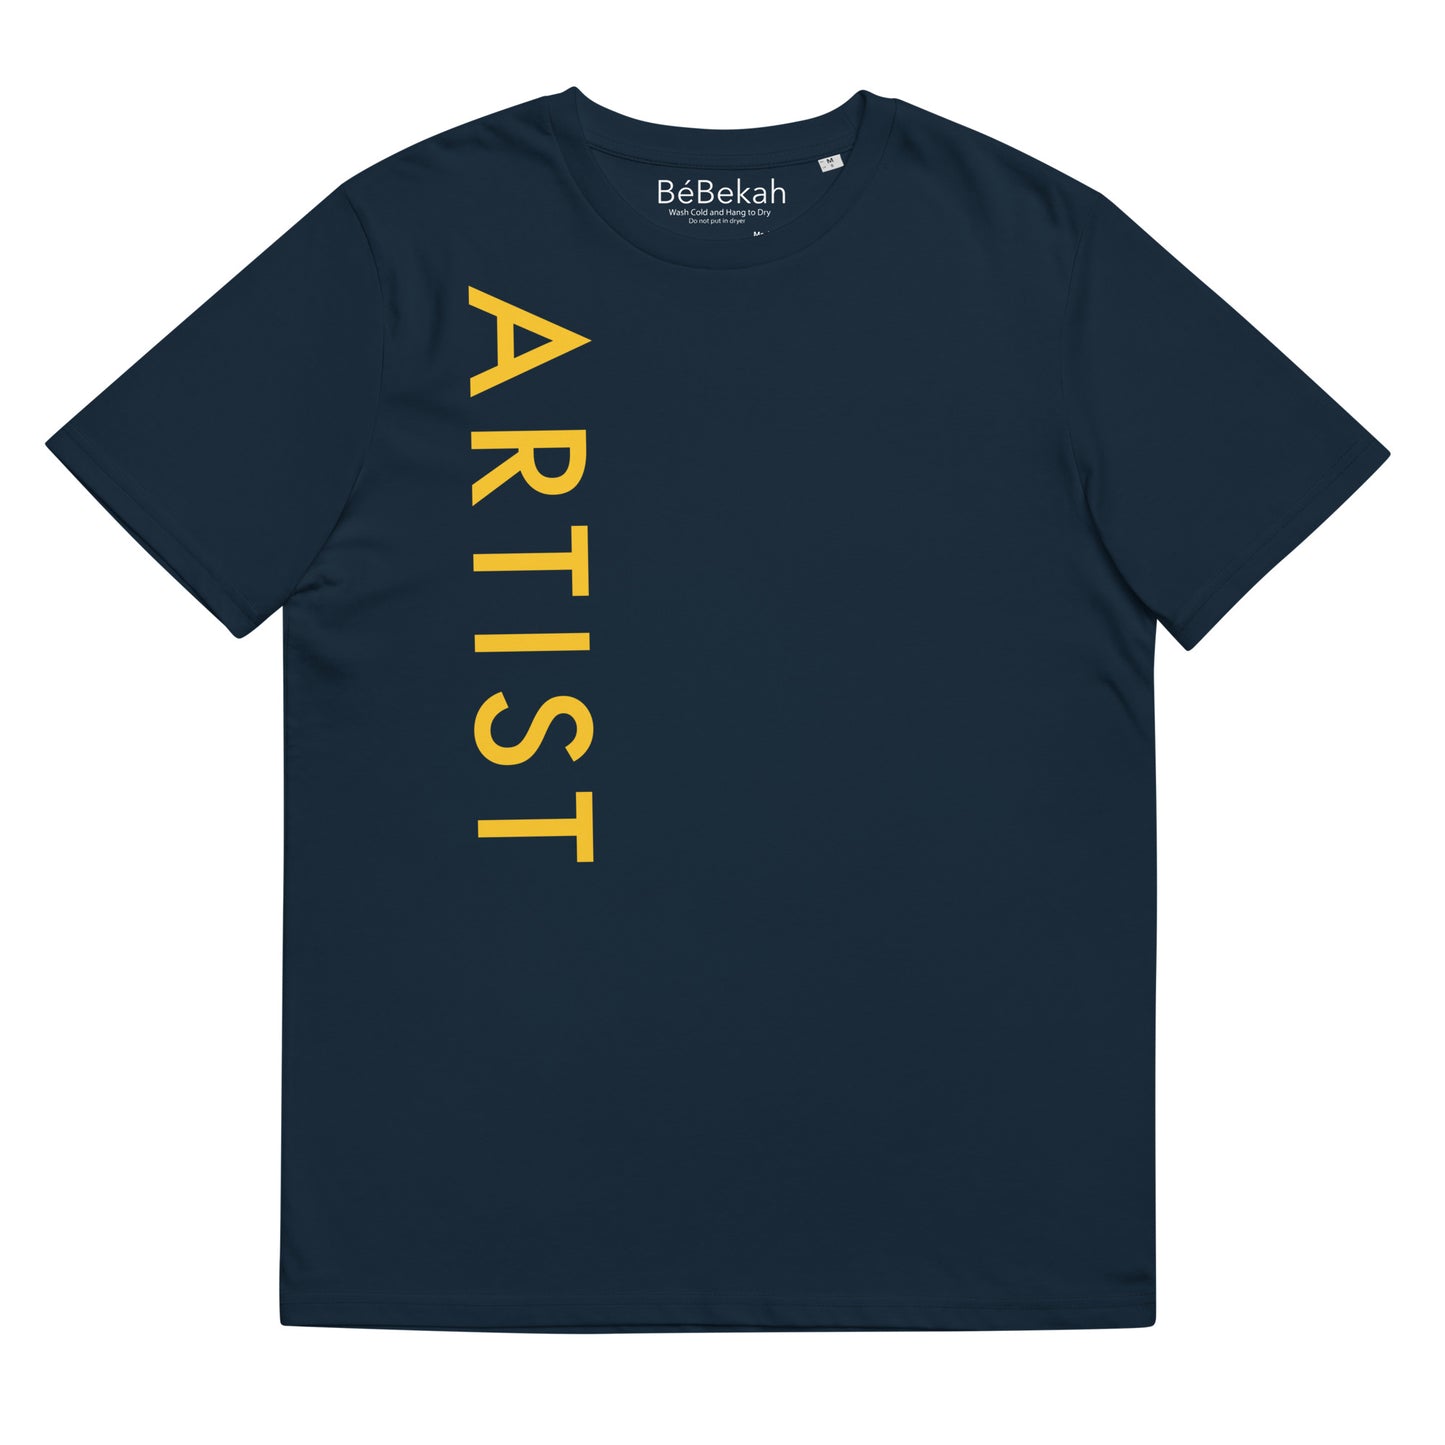 Artist Unisex T-Shirt